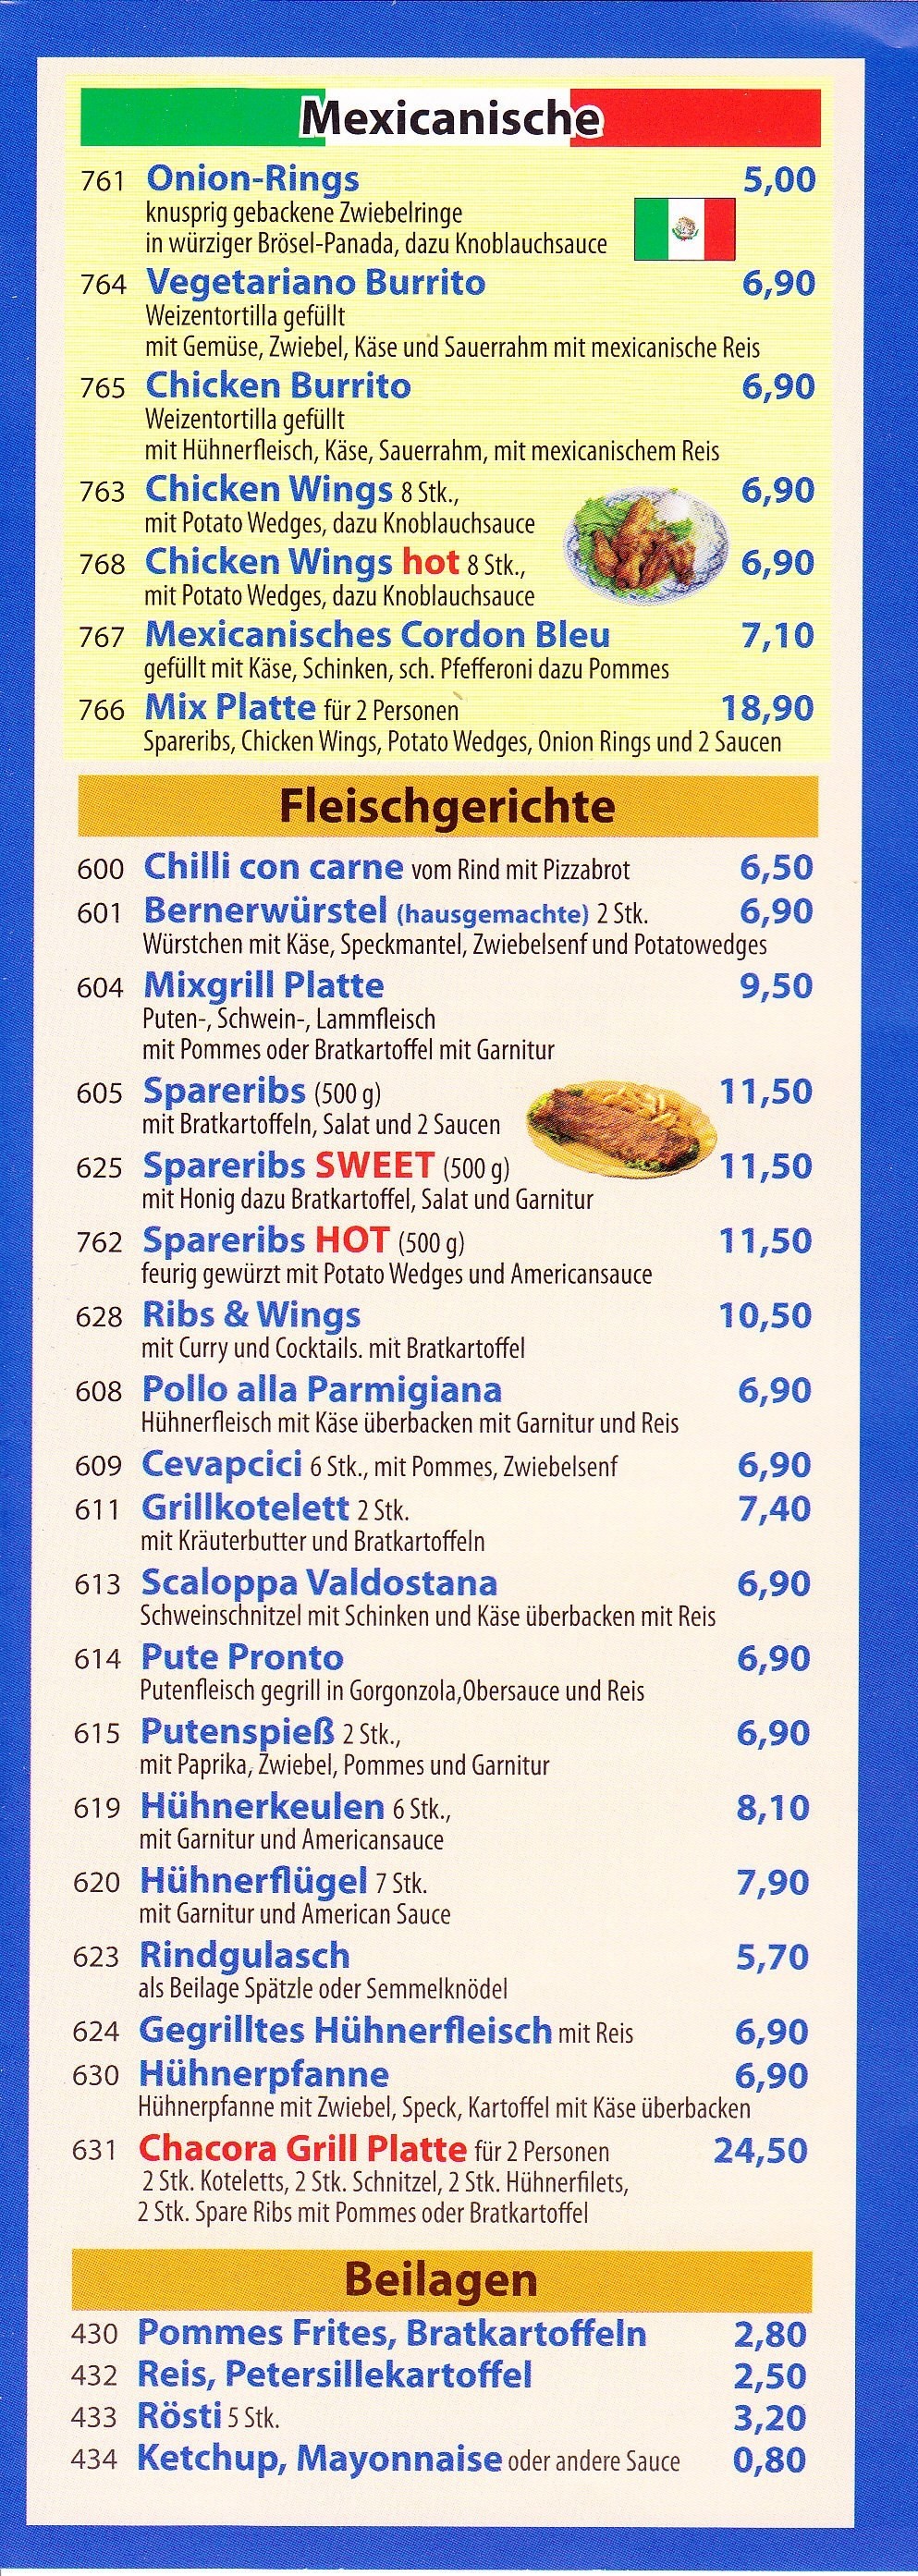 Chacora Flyer Seite 4 - Pizzeria-Ristorante Chacora - Wien